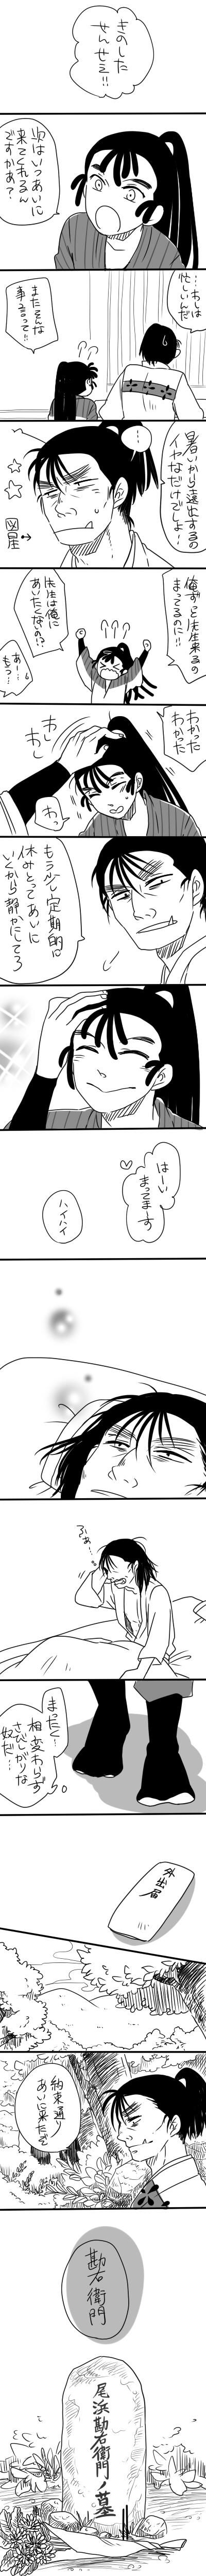 【死梗】木直觉-忍者漫画木勘